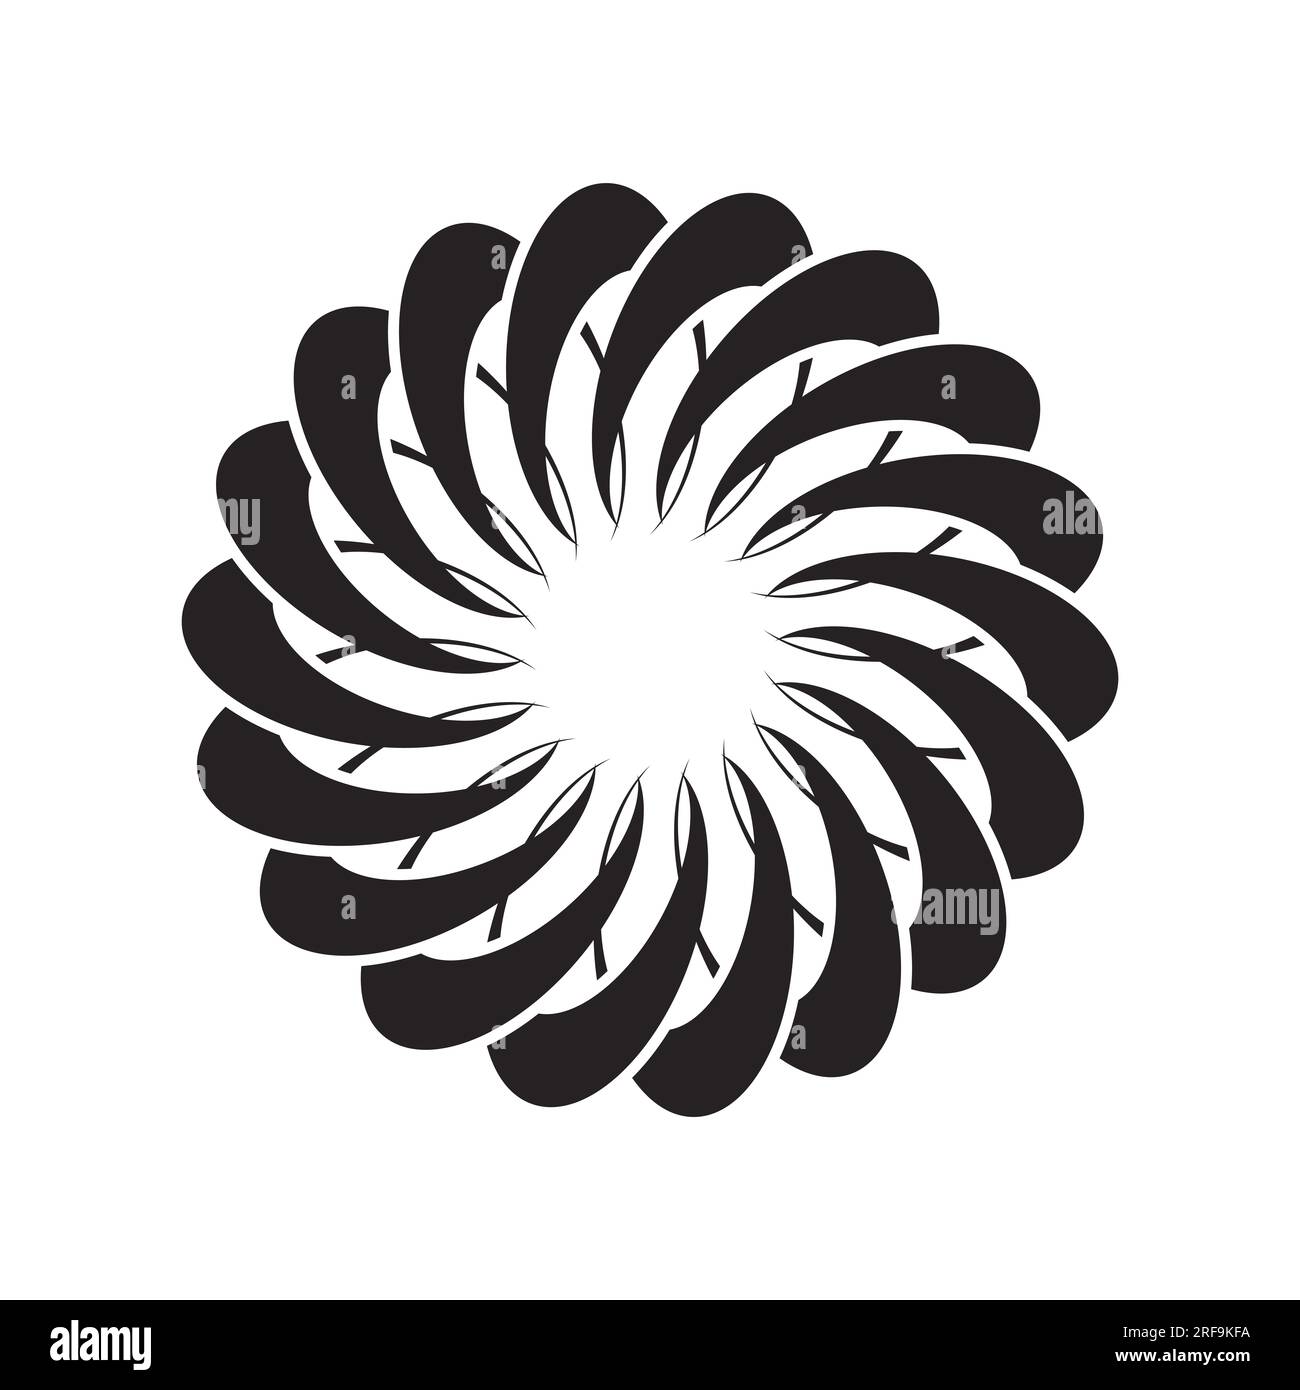 Motif circulaire icône dessin de symbole d'illustration vectorielle Banque D'Images